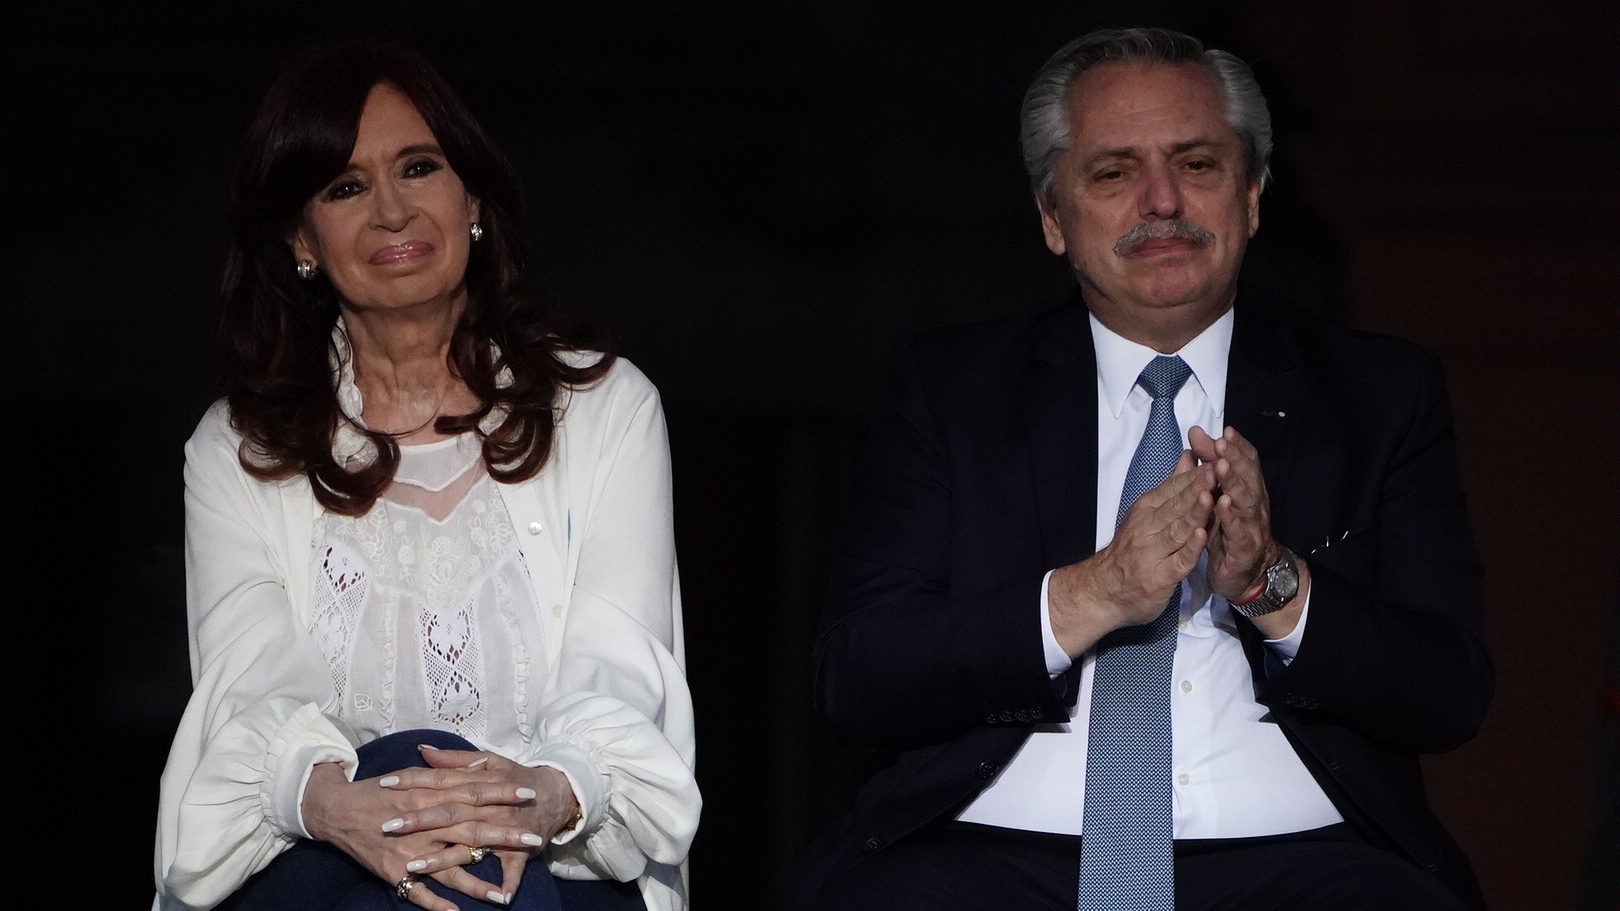 El último discurso de Cristina Kirchner agotó a Alberto Fernández, que se  subió al ring y peleará junto a su círculo íntimo - Infobae